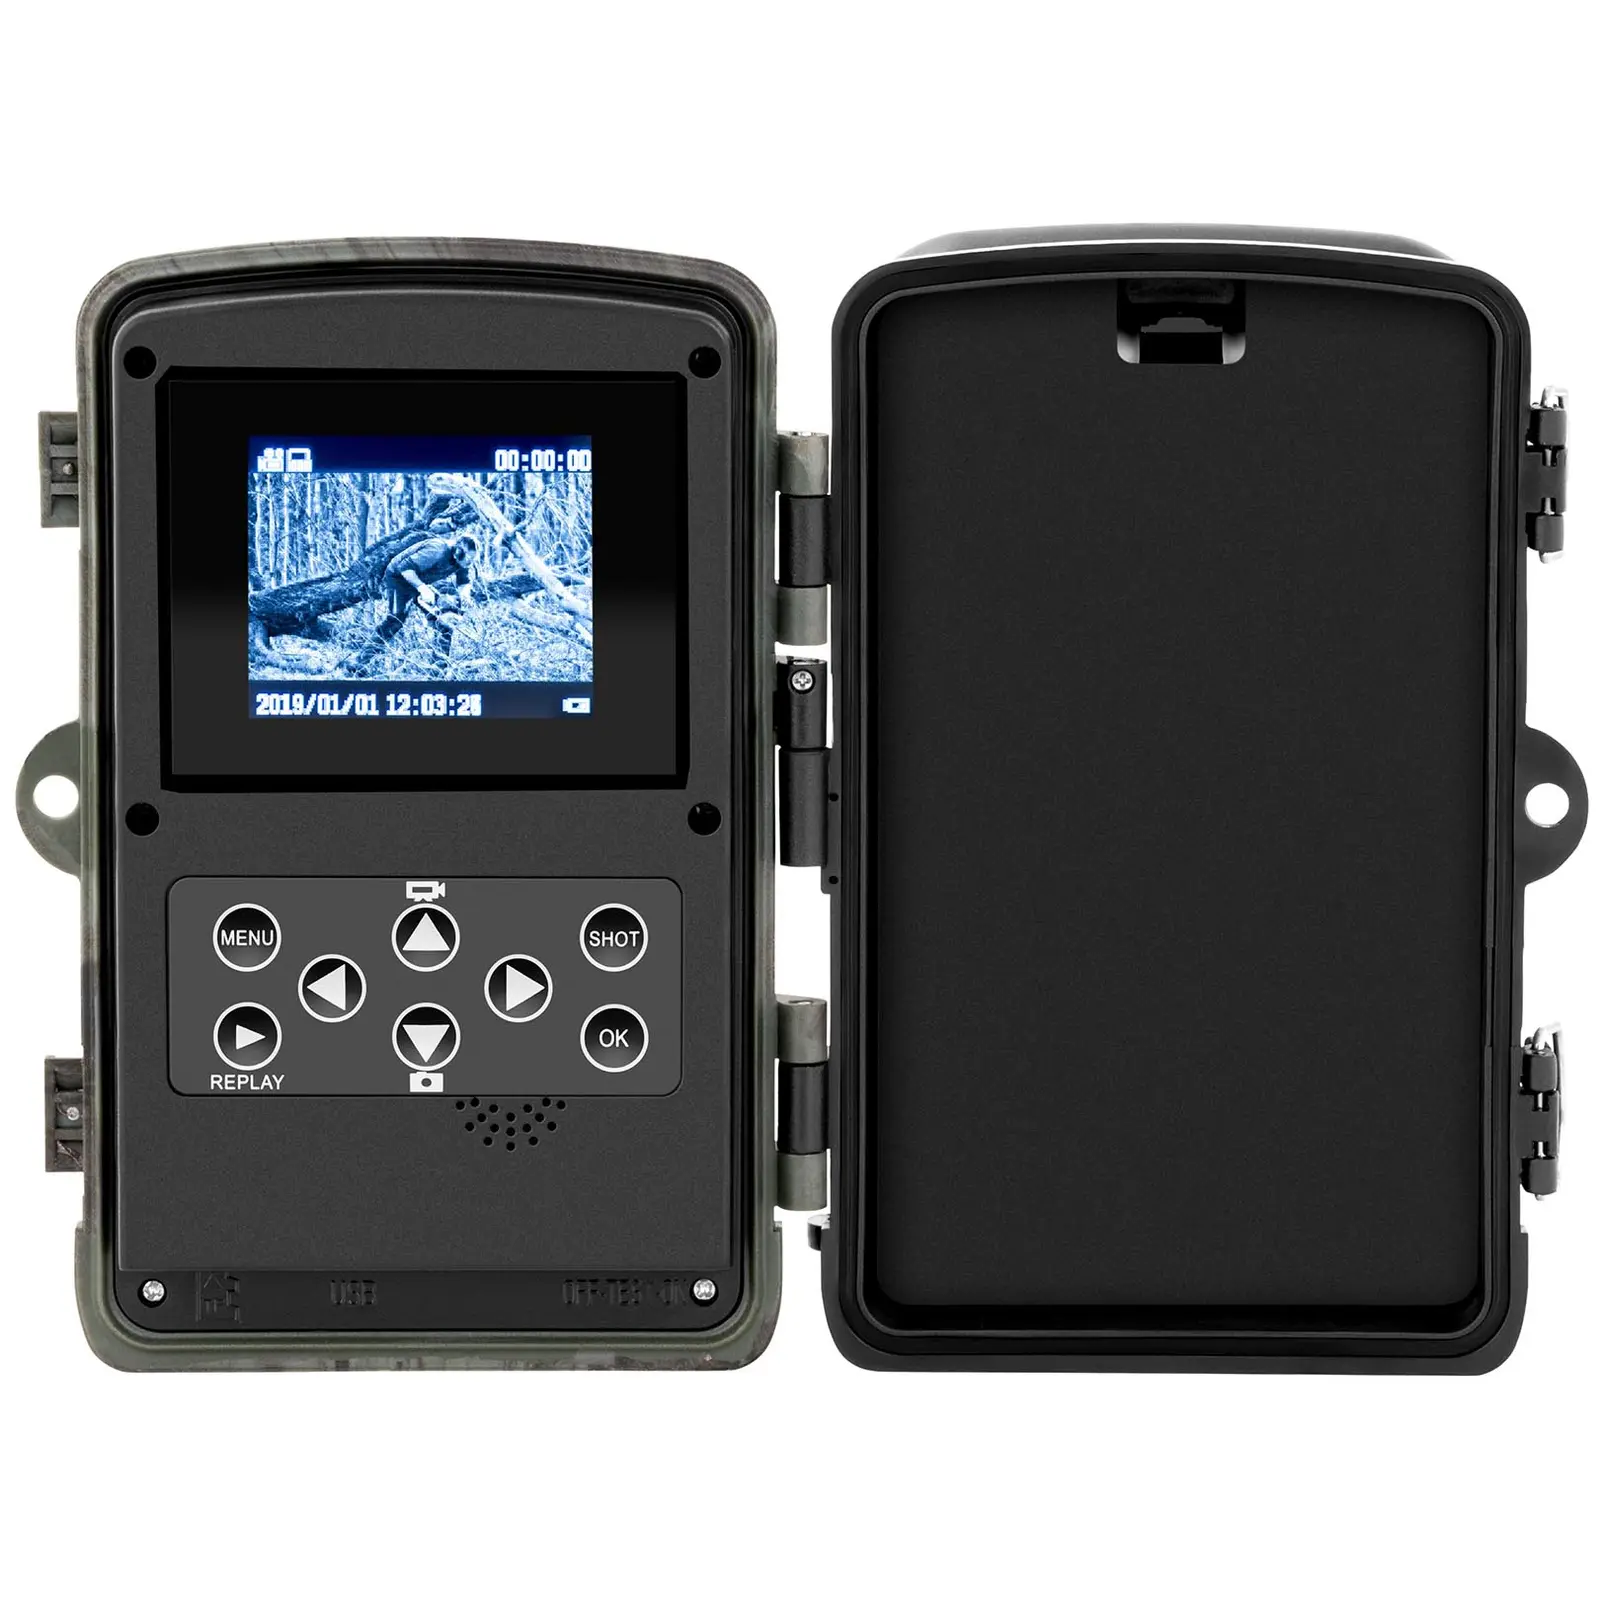 Wildkamera - 8 MP - 2.7K Full HD - 46 IR-LEDs - 20 m - 0,3 s